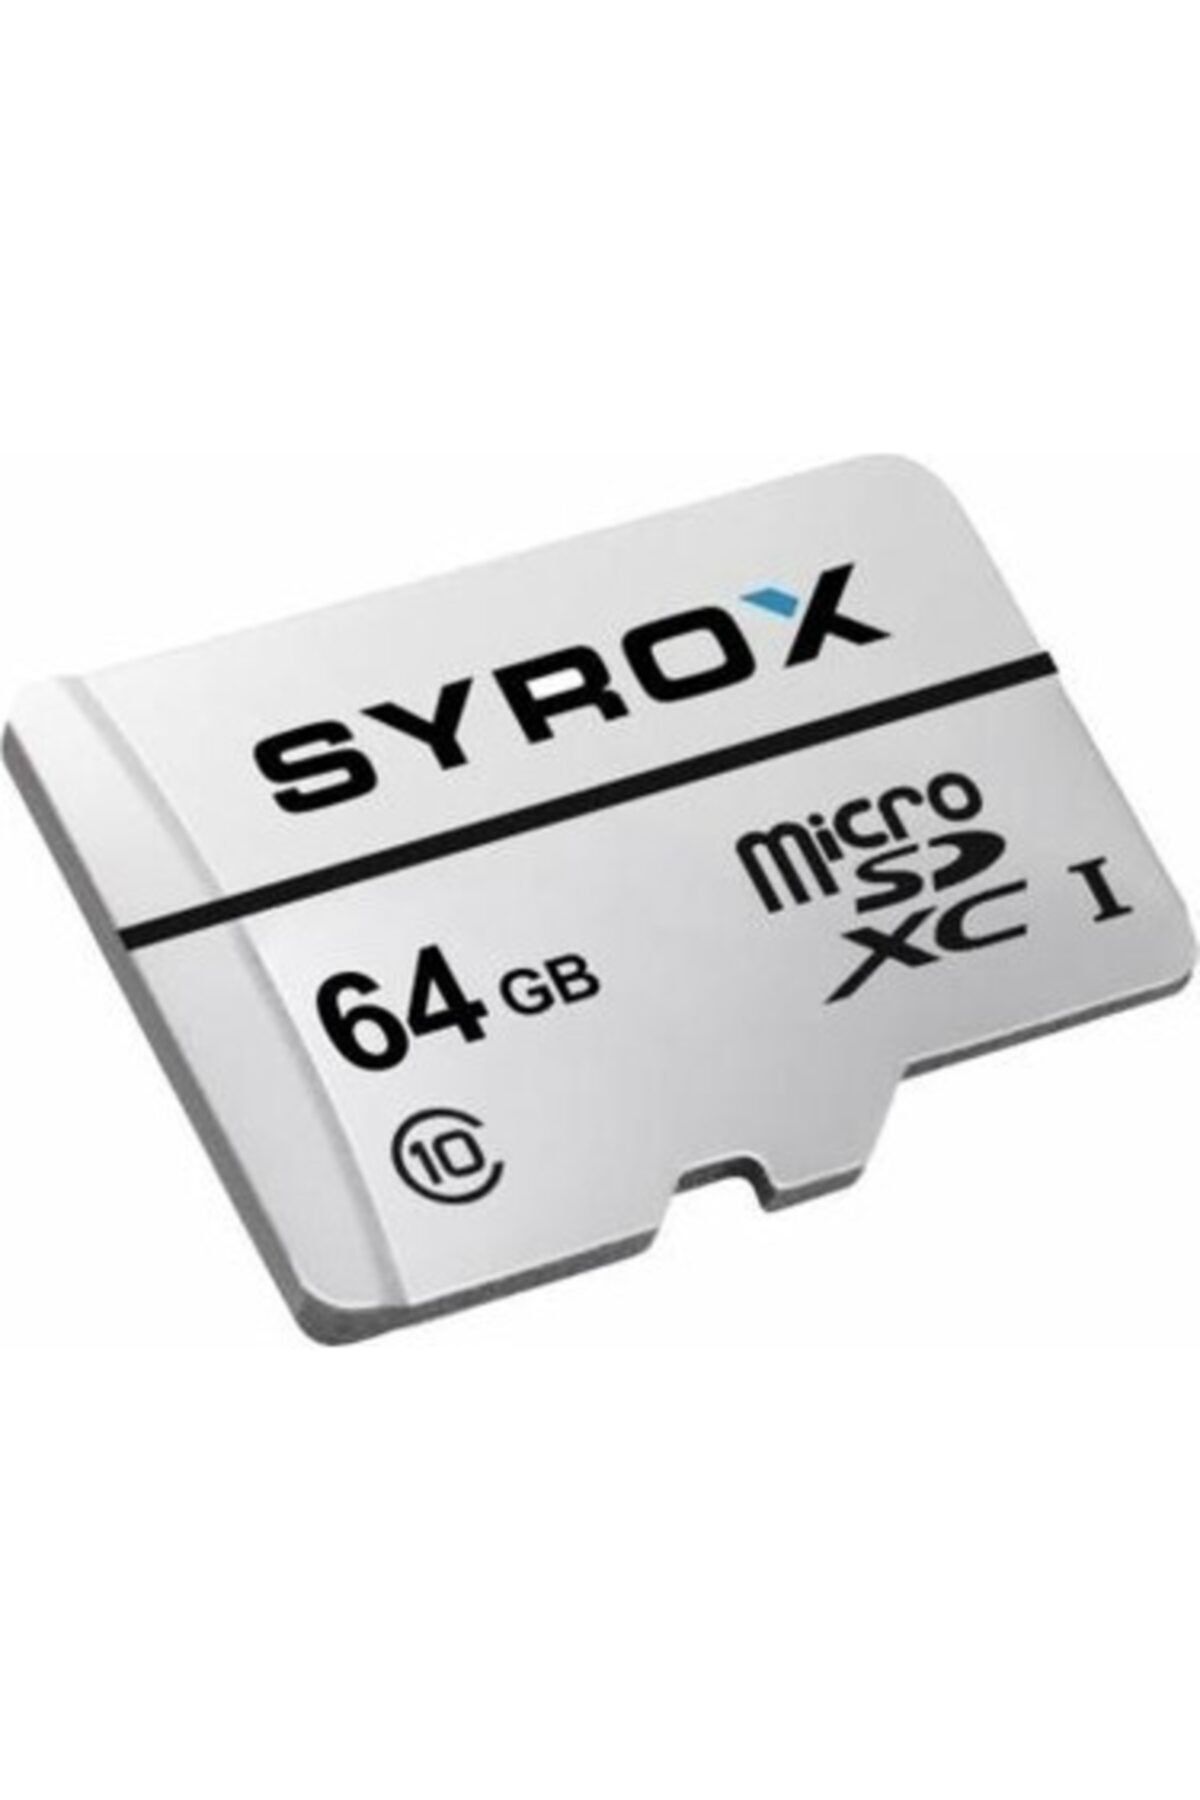 Syrox Mc 64gb Microsd Adaptörlü Hafıza Kartı Mc 64gb